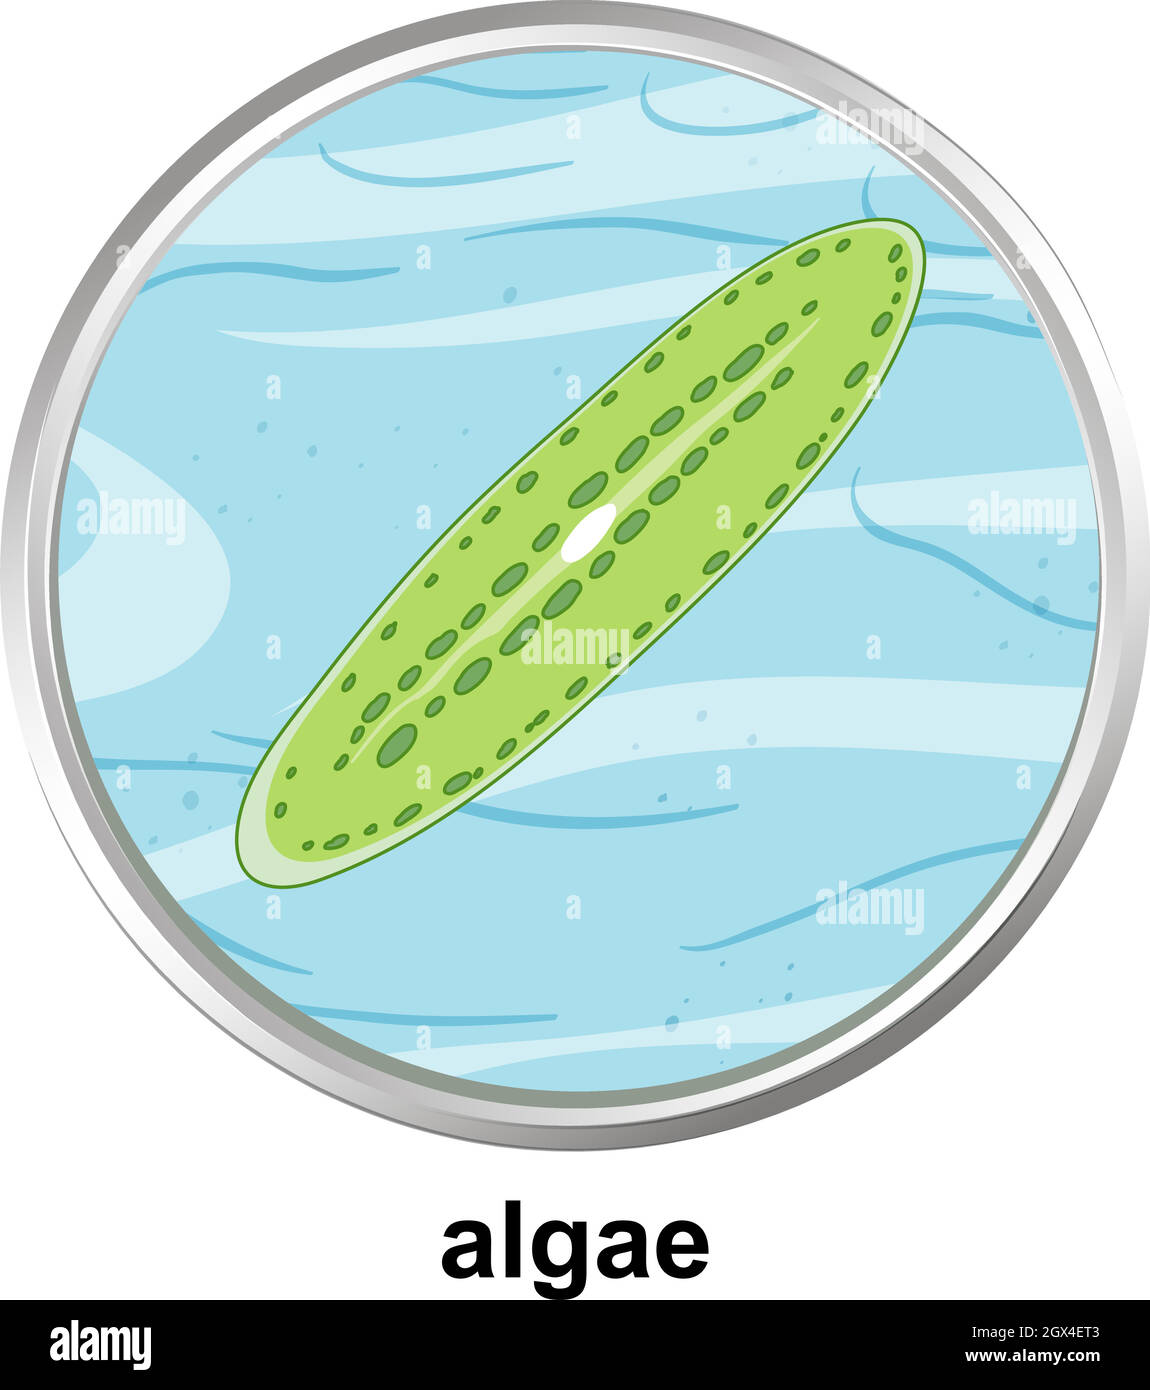 Structure anatomique des algues sur fond blanc Illustration de Vecteur